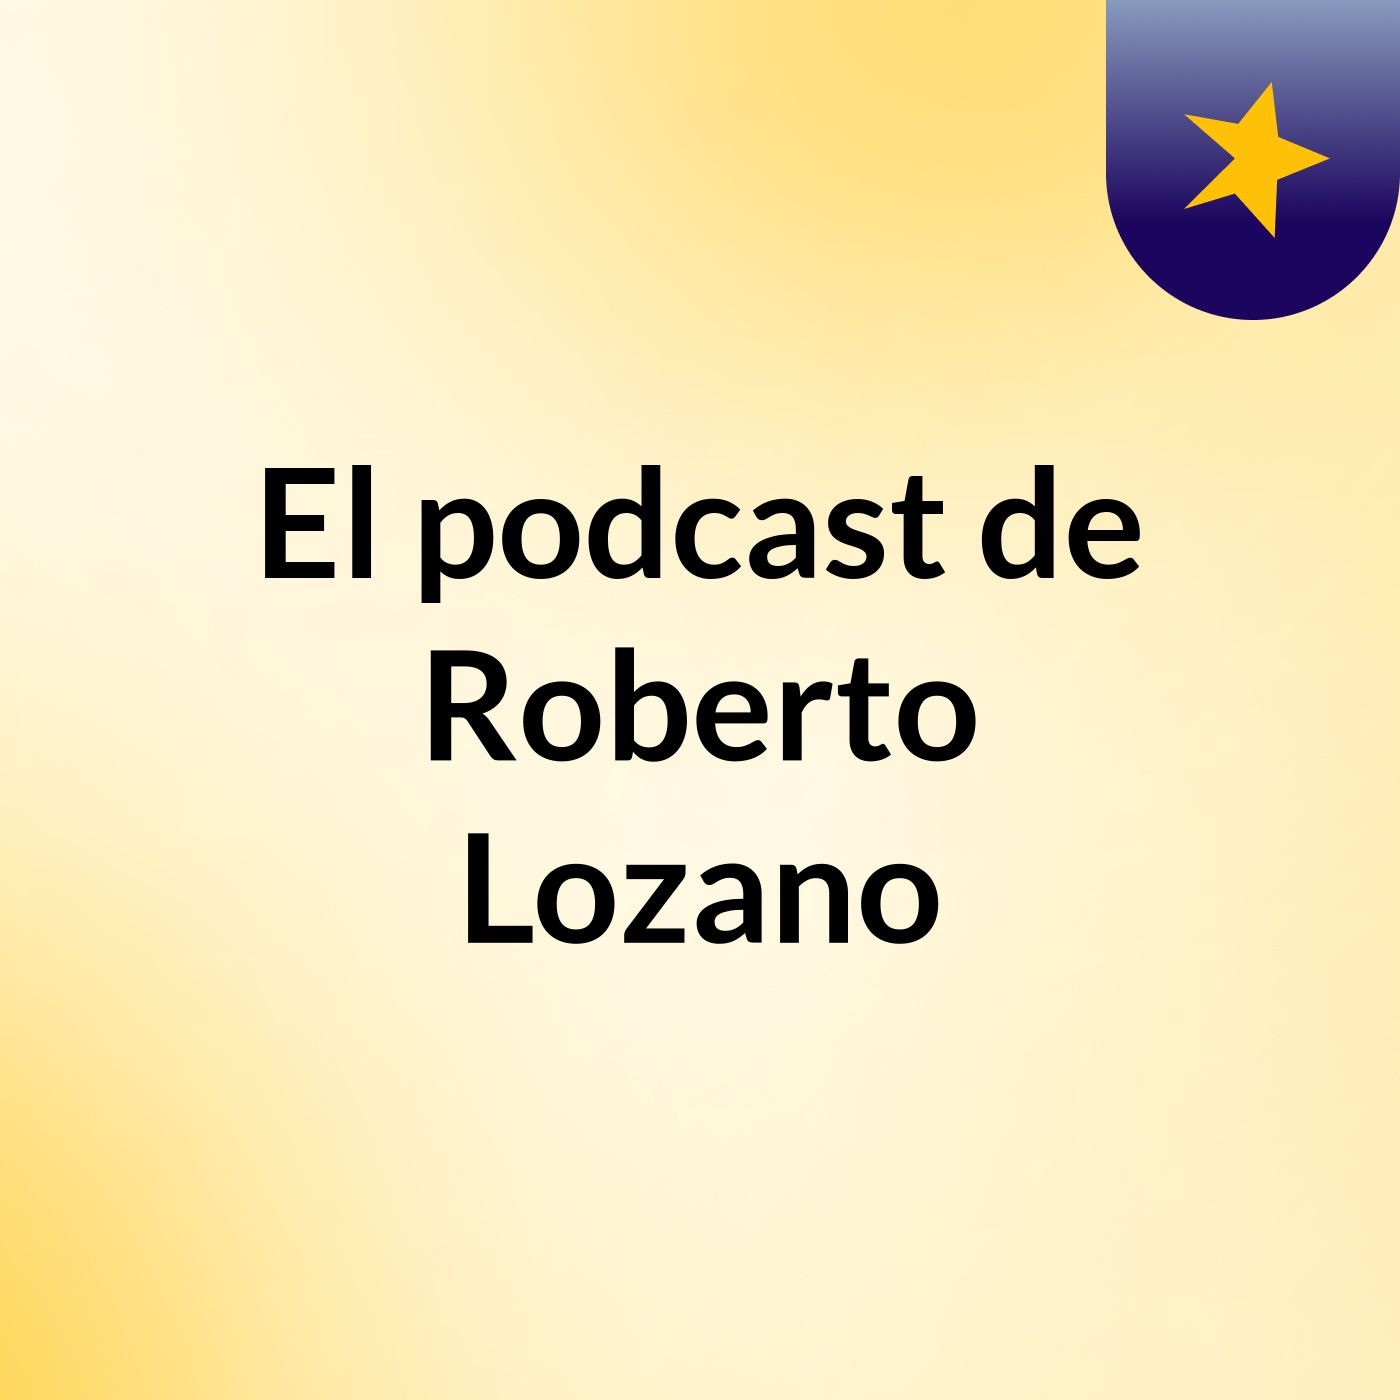 El podcast de Roberto Lozano